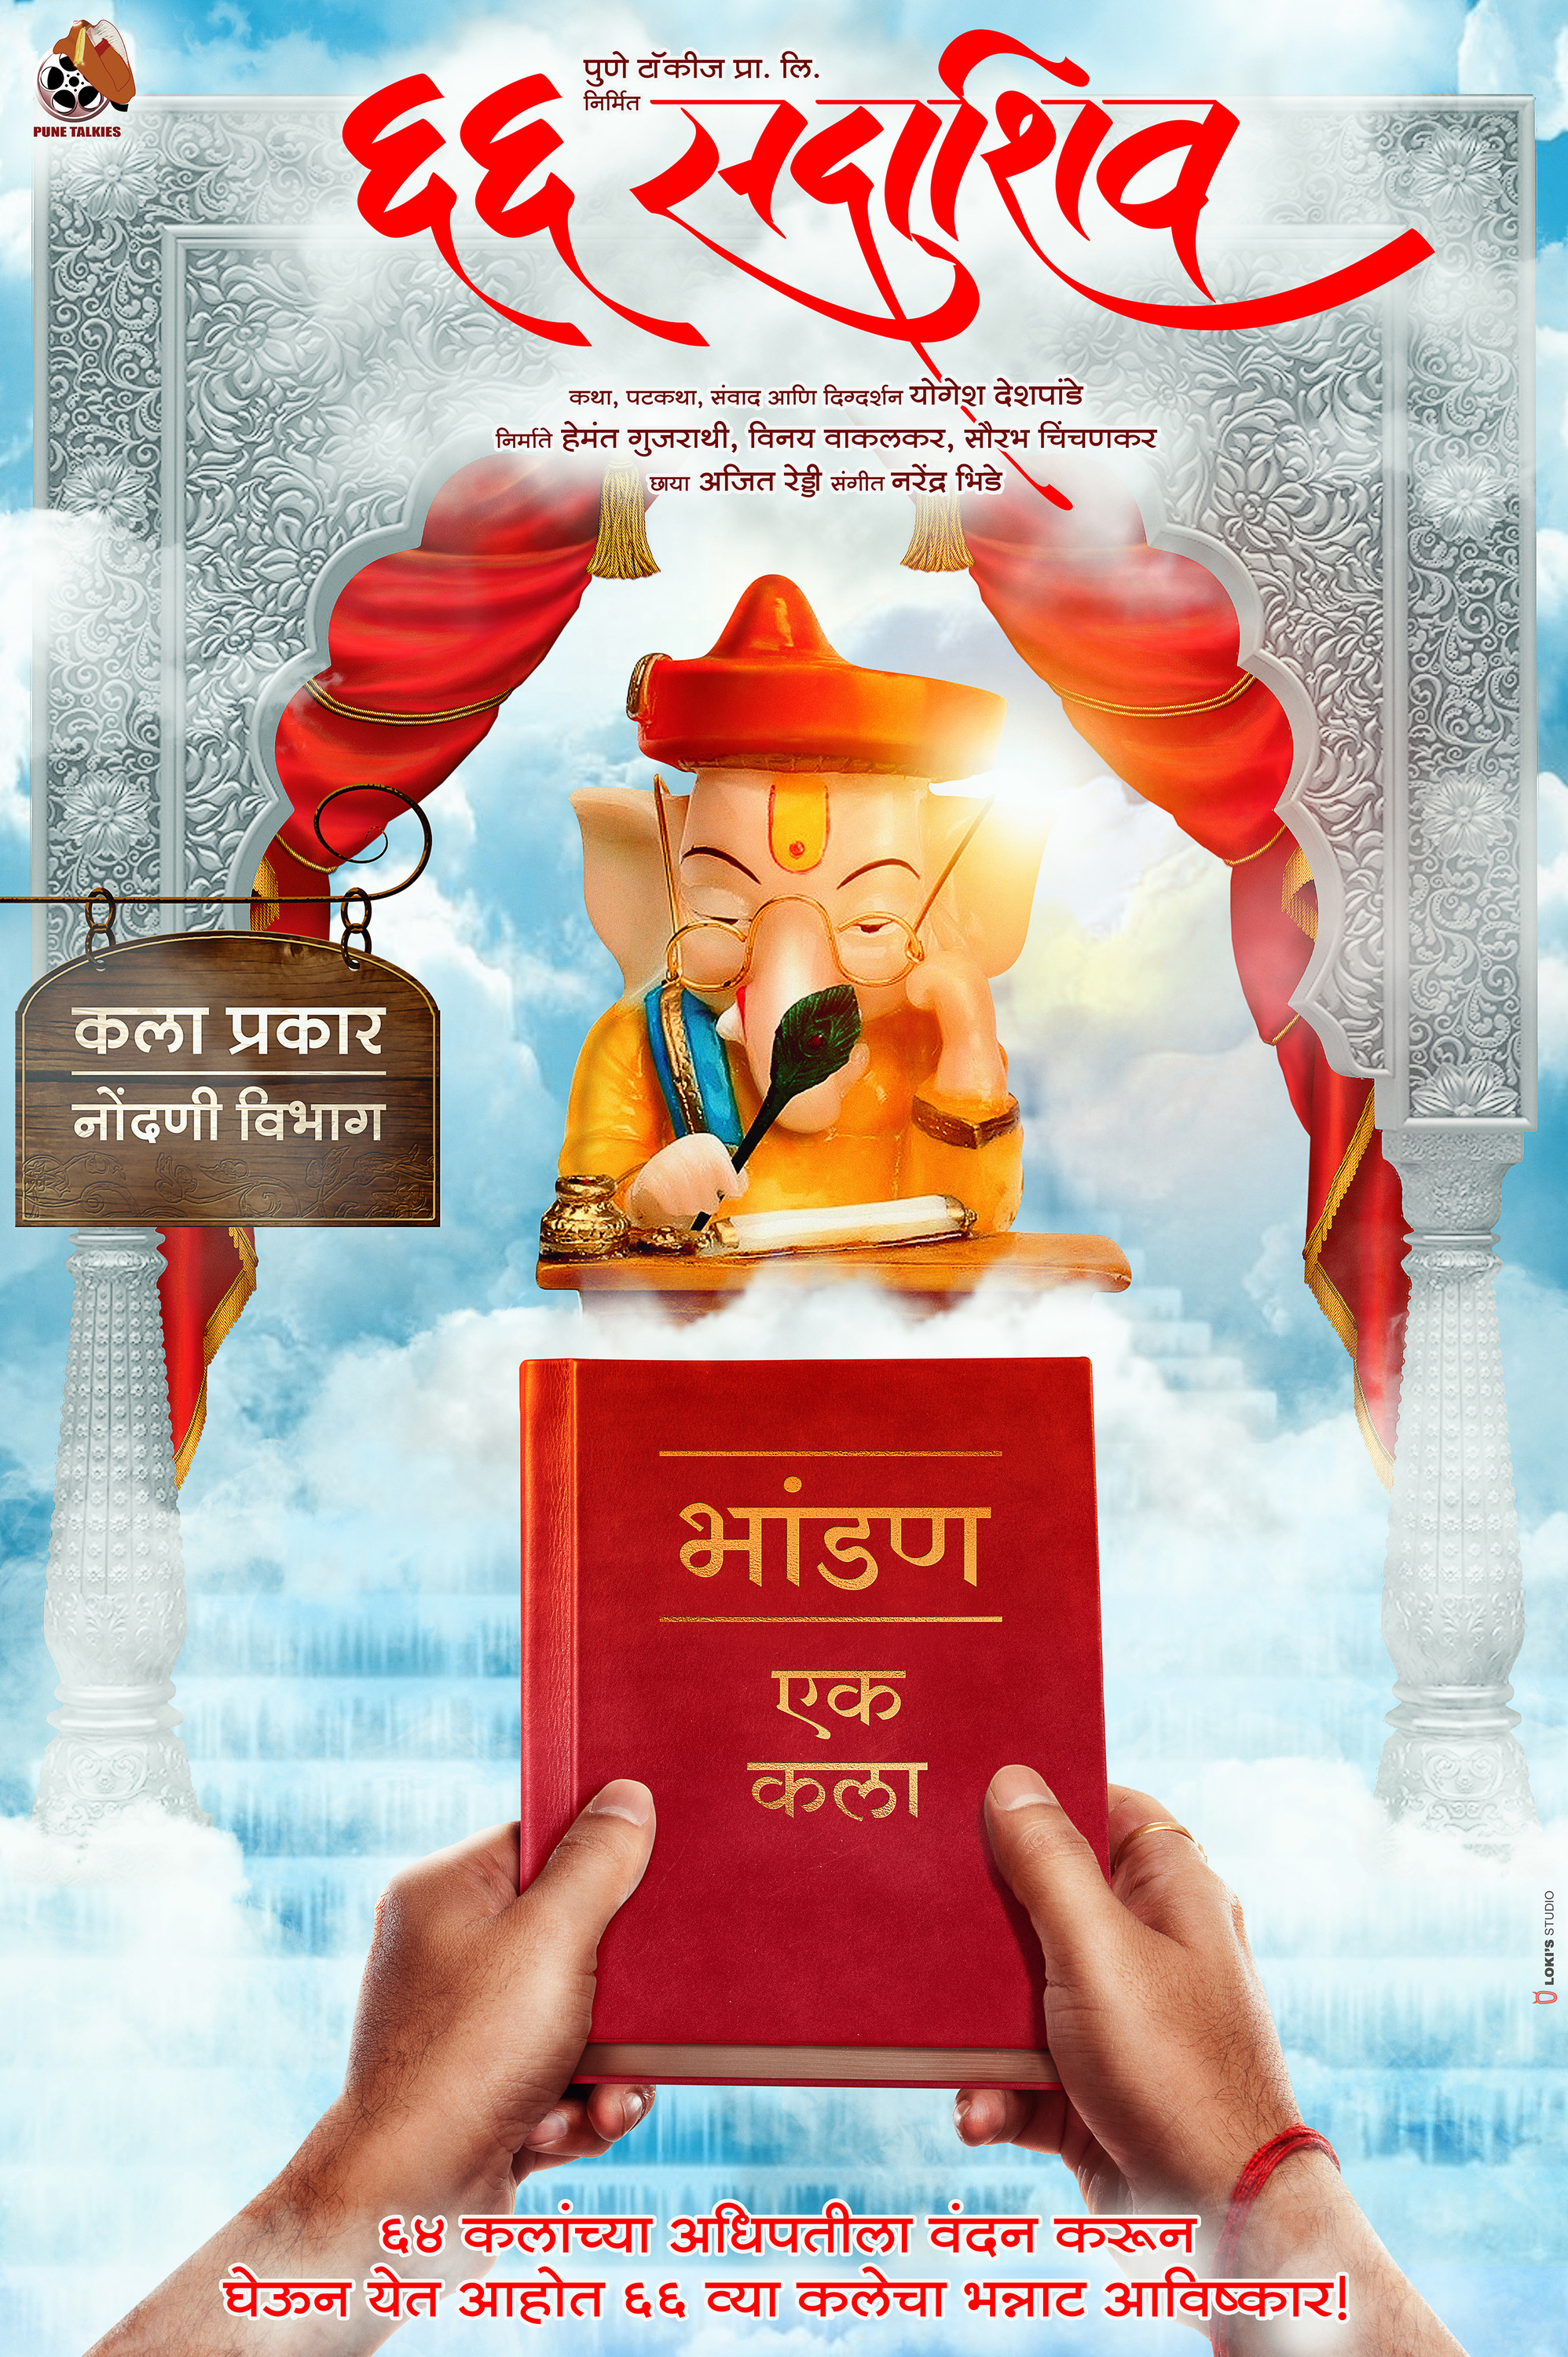 Mega Sized Movie Poster Image for 66 Sadashiv (#3 of 8)